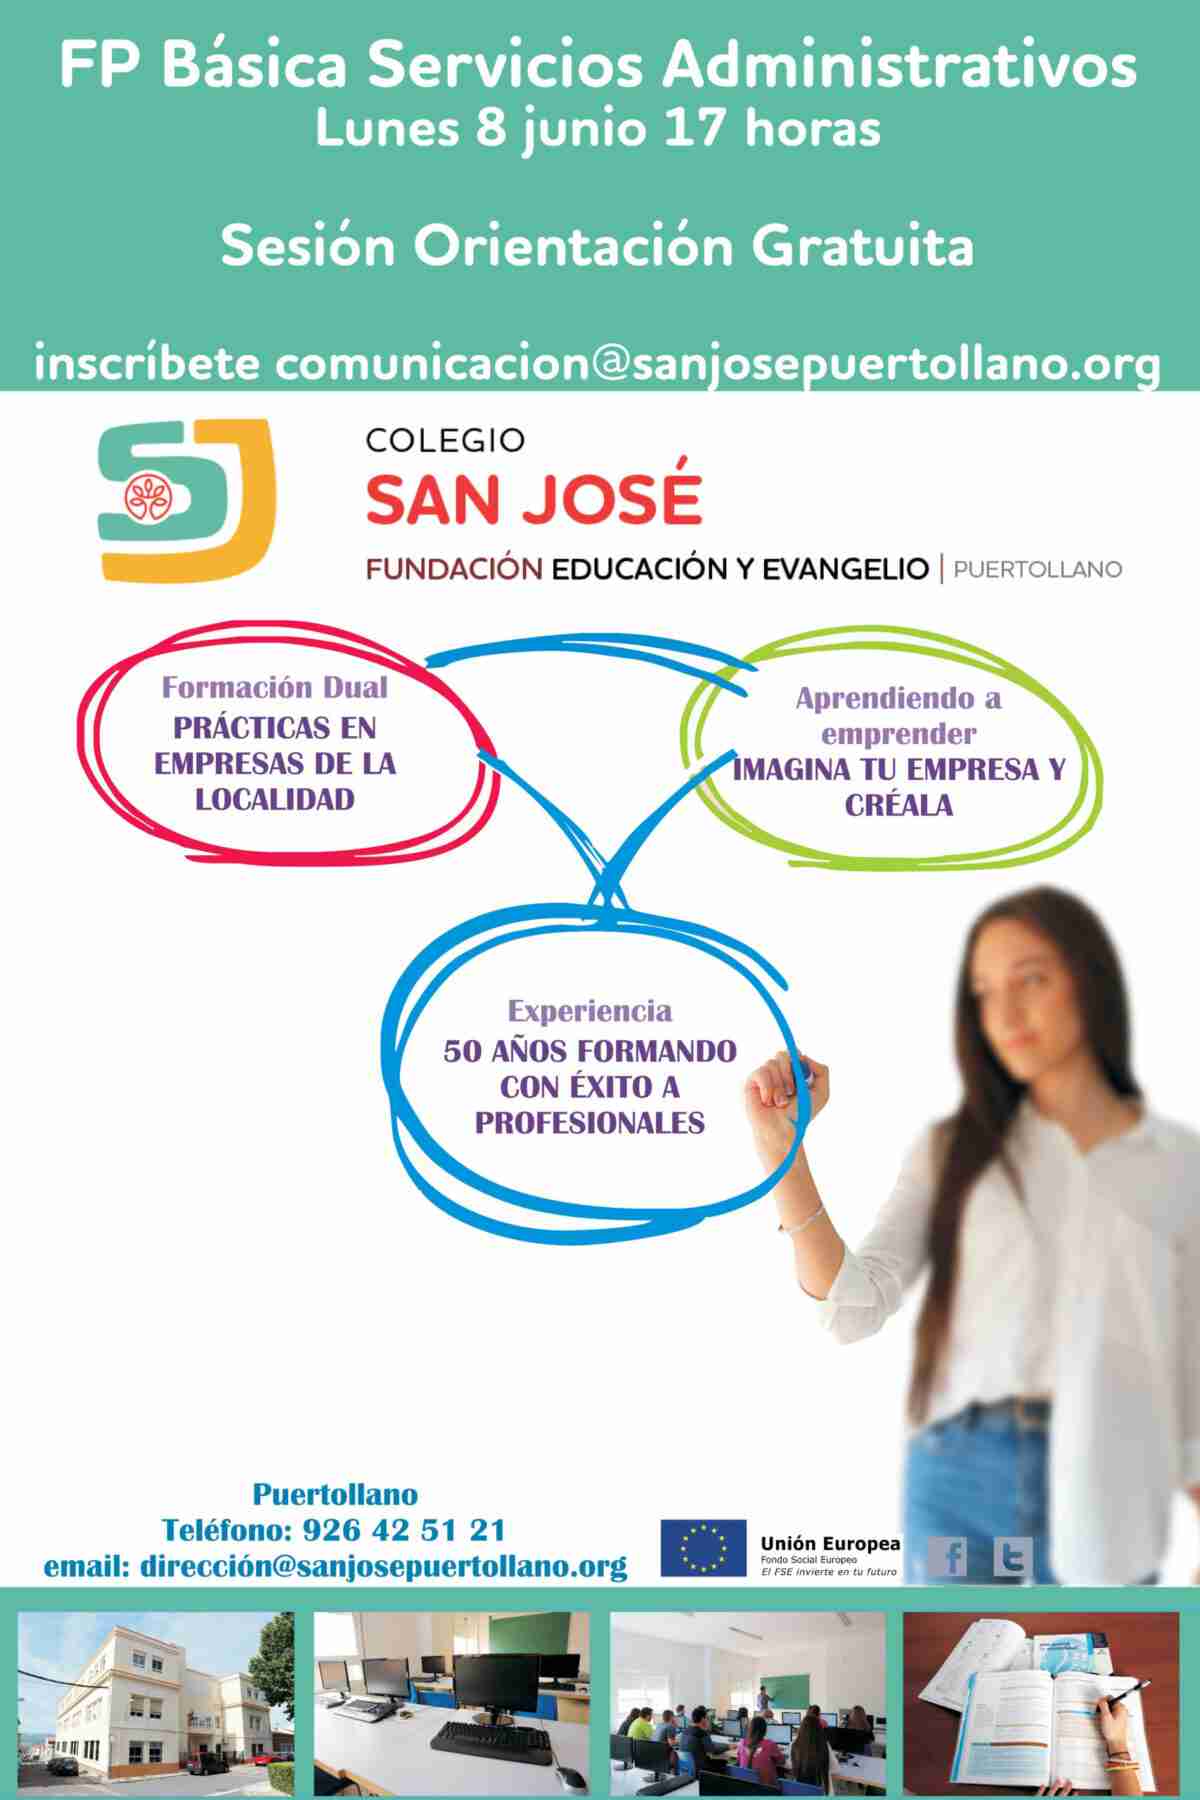 El Colegio San José de Puertollano invita a una sesión gratuita de orientación sobre FP Básica 1